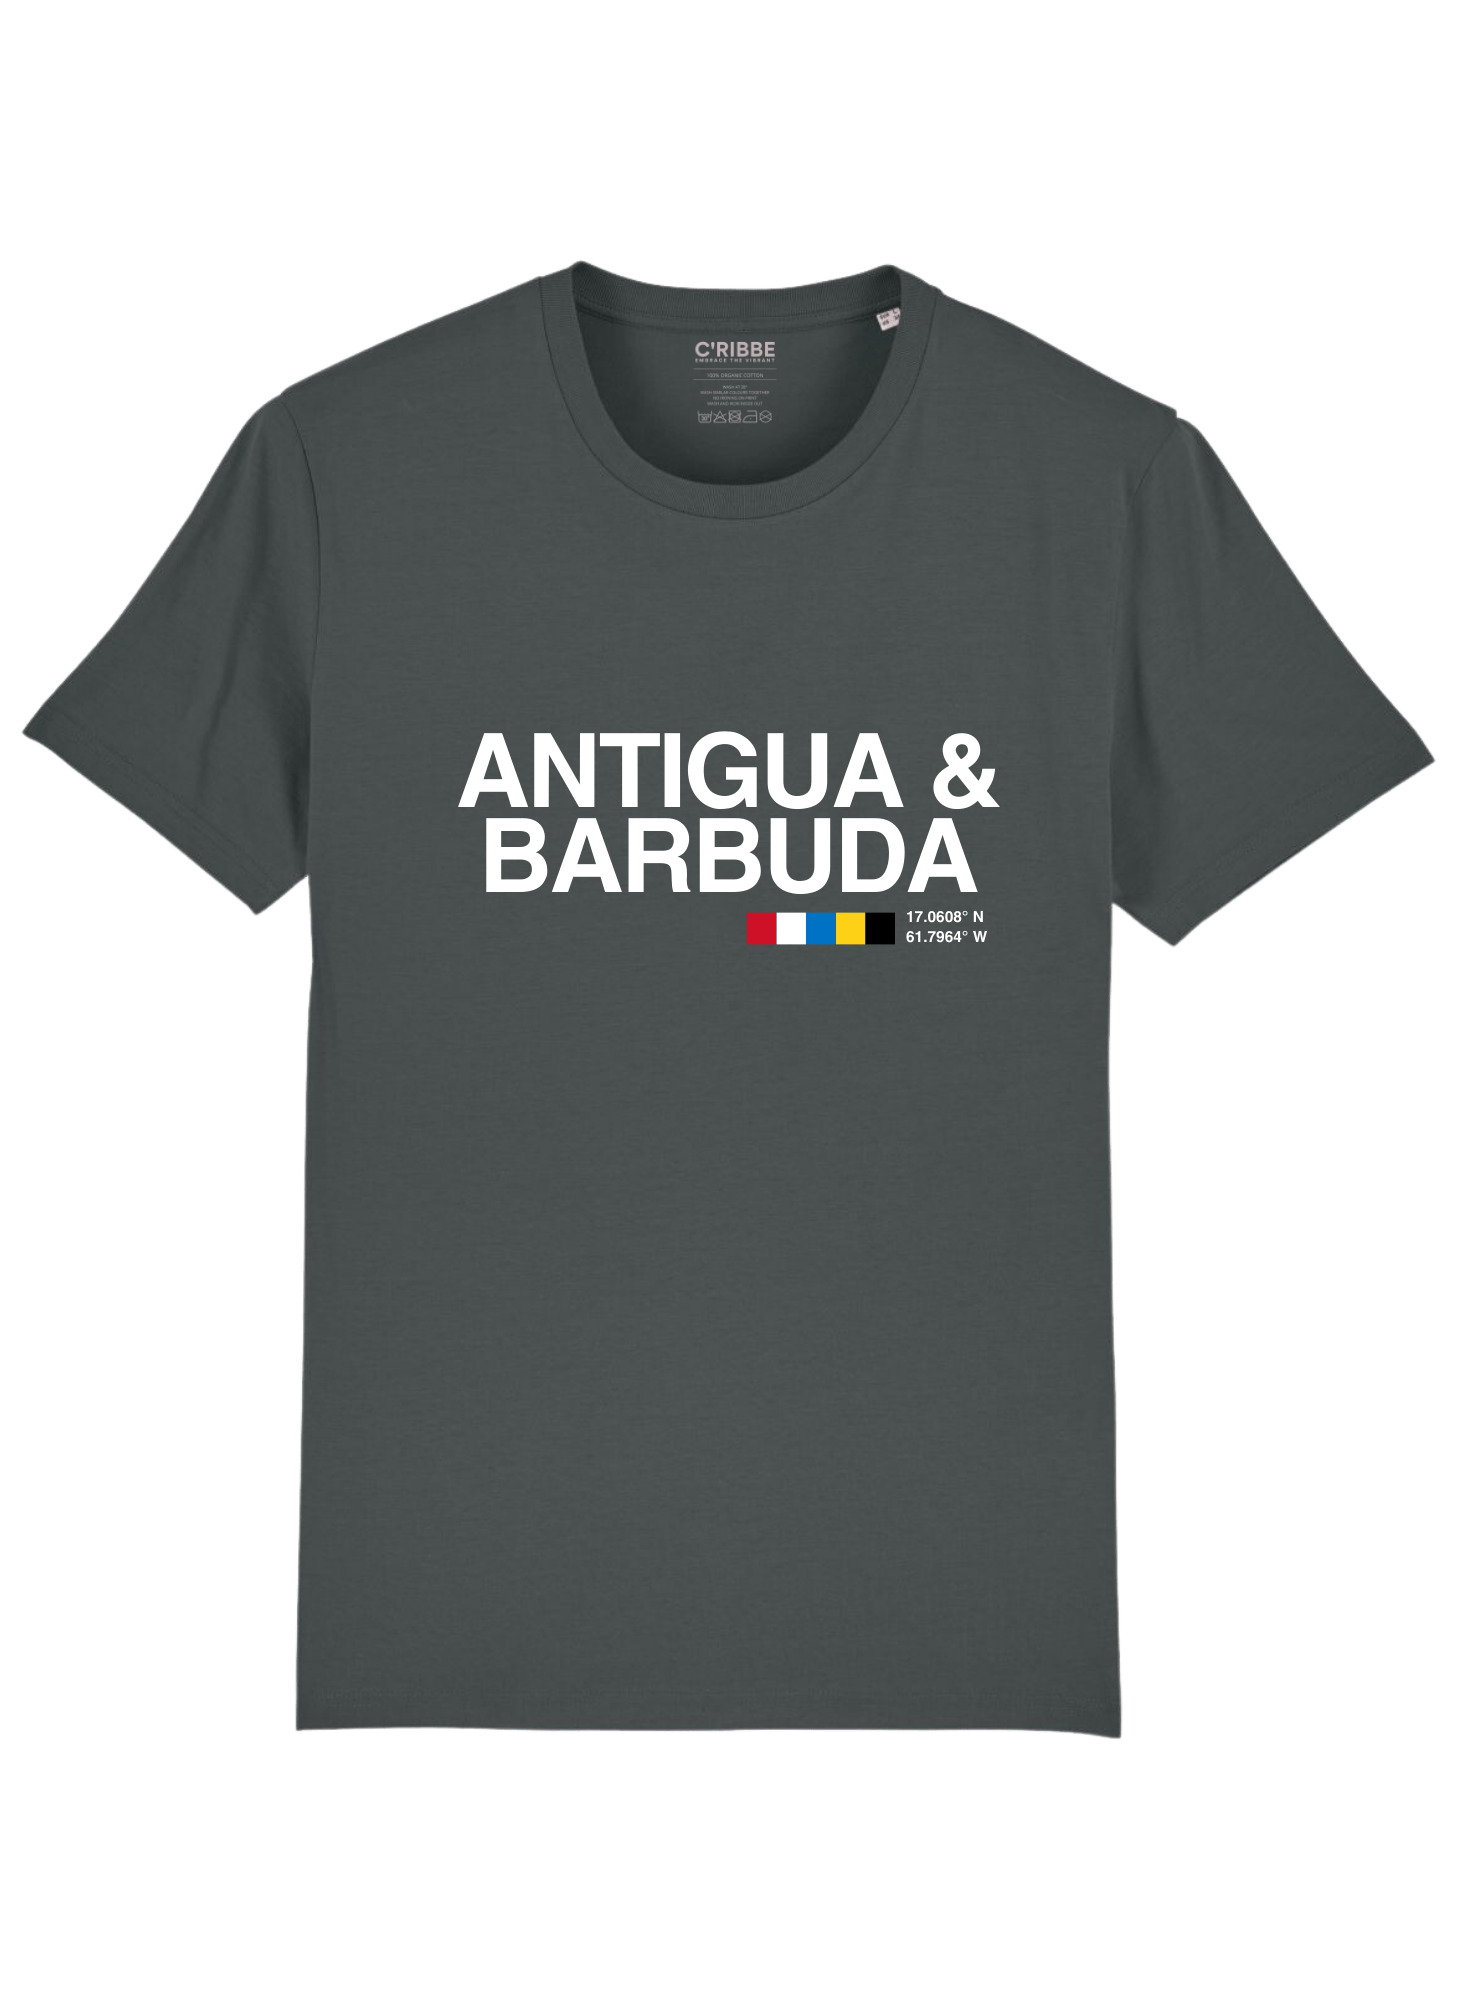 ANTIGUA & BARBUDA Print Unisex Crew Neck T-Shirt, Anthracite